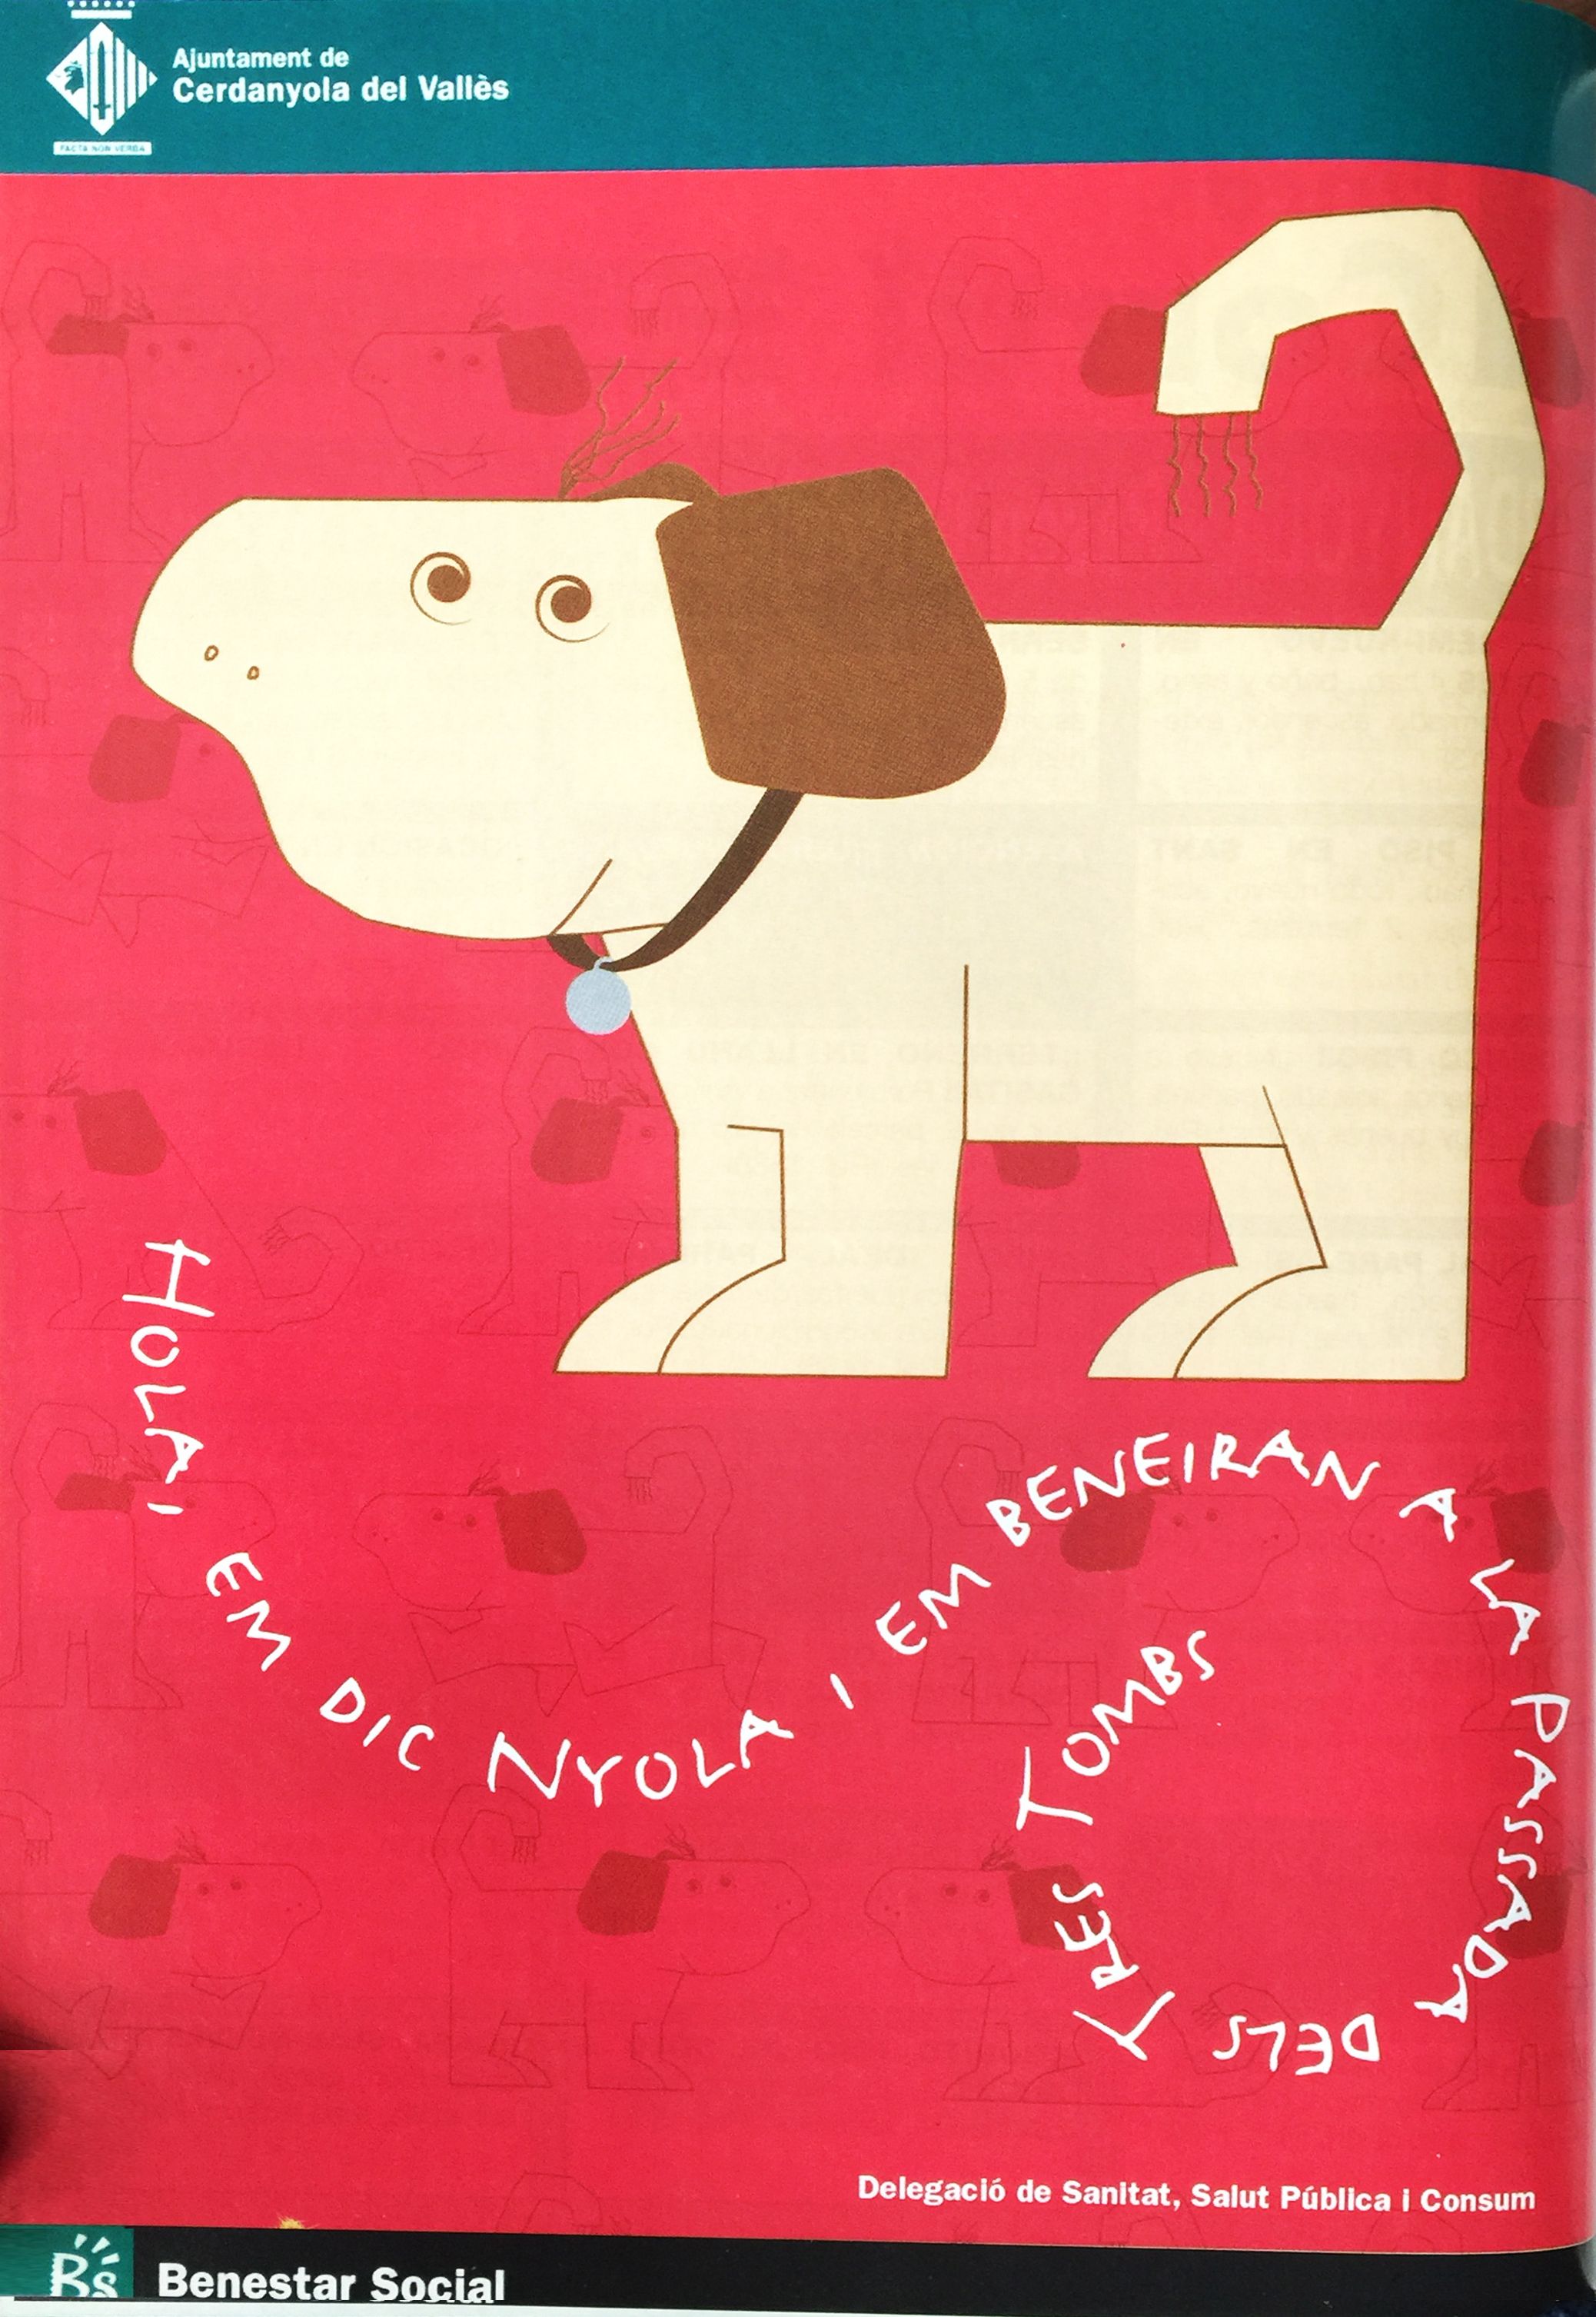 Presentació de la campanya i la mascota "Nyola" (2001)